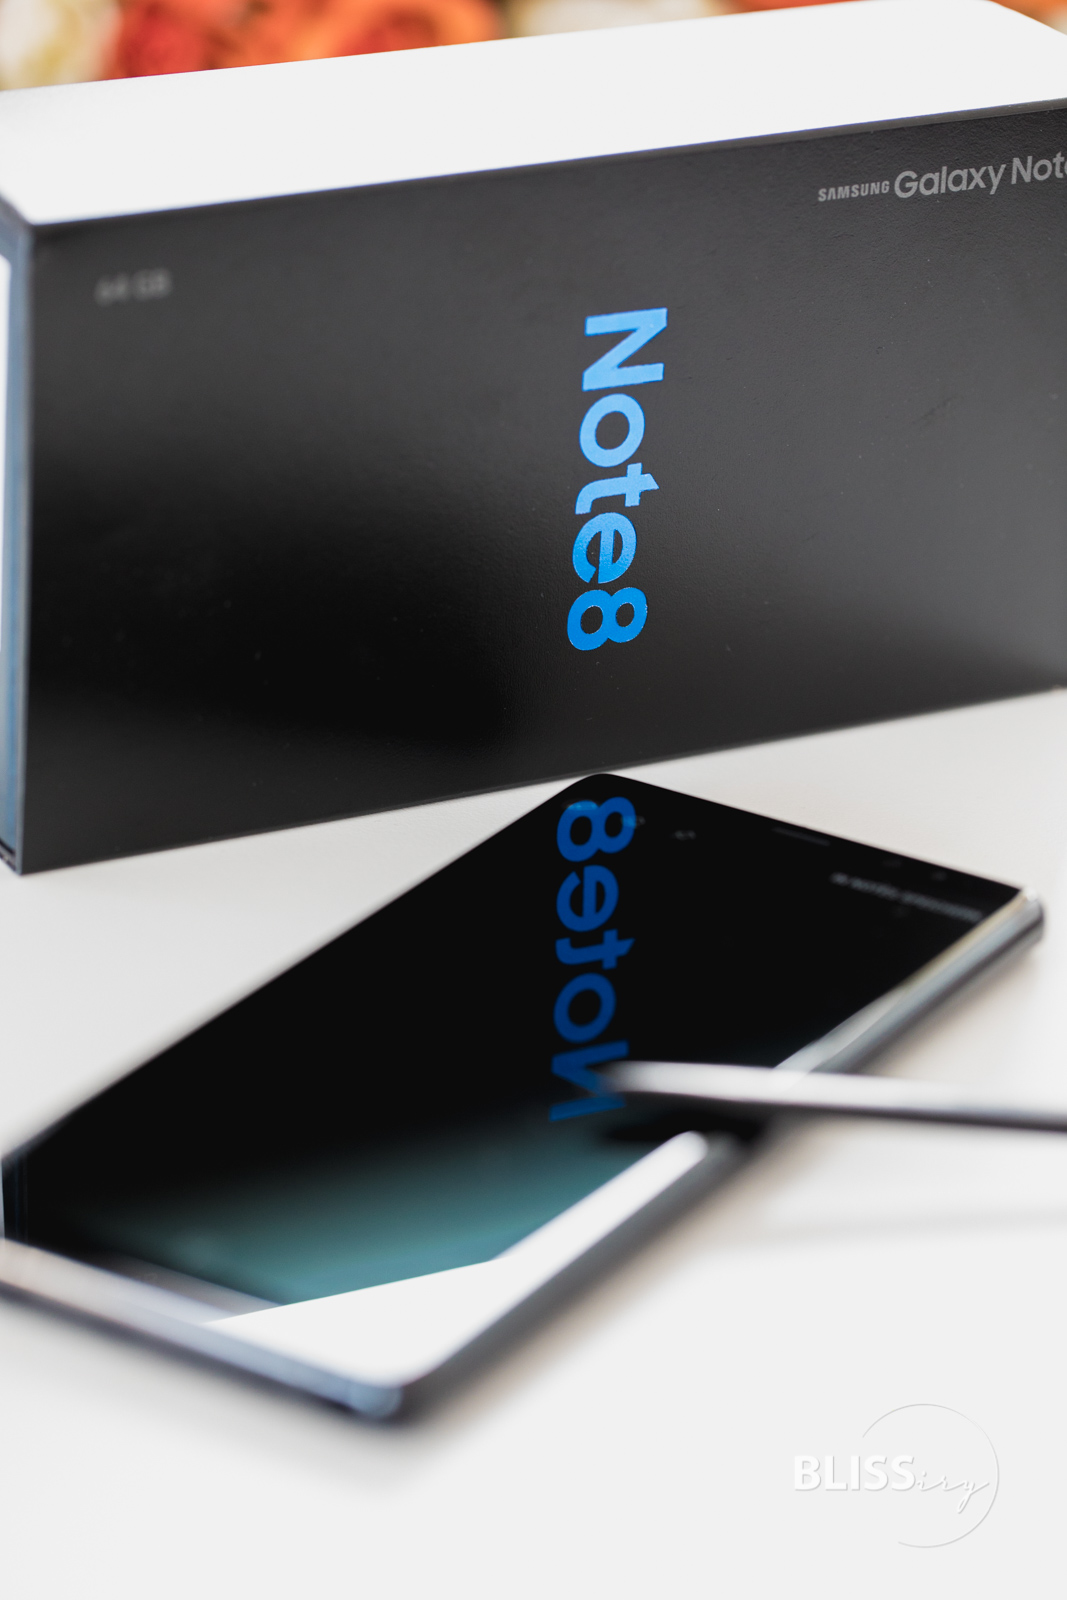 Samsung Note8 im Test - Business-Smartphone mit S-Pen - Samsung Note8 Produkttest - Smartphone-Blog - Technikblogger - Erfahrungen und Eindrücke - Samsung Produkte - Wertigkeit, Software